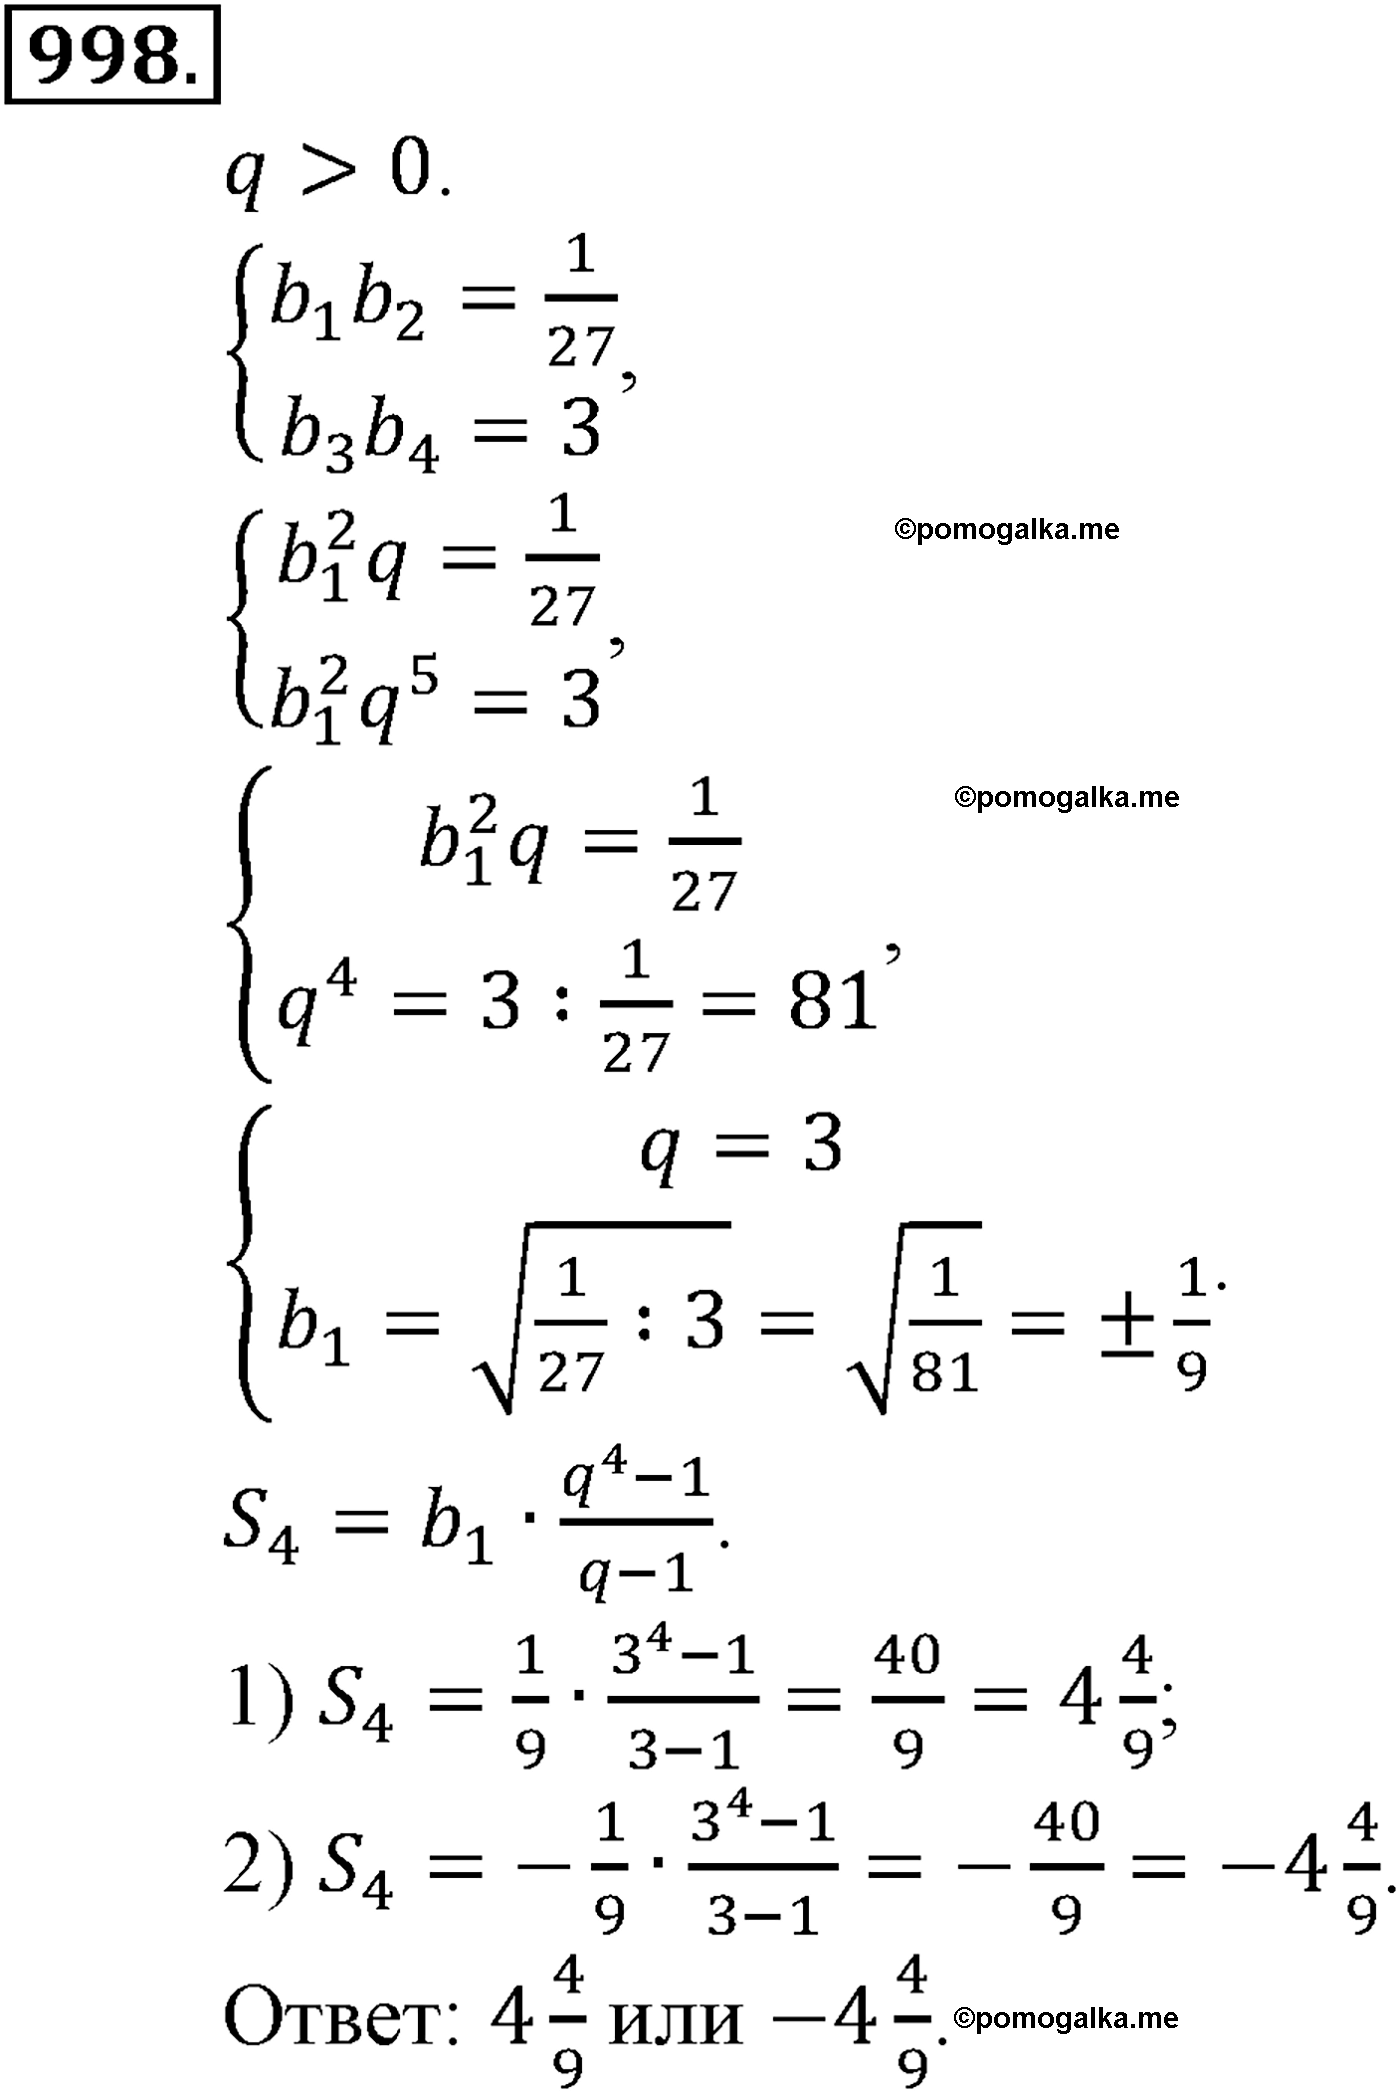 Алгебра 998